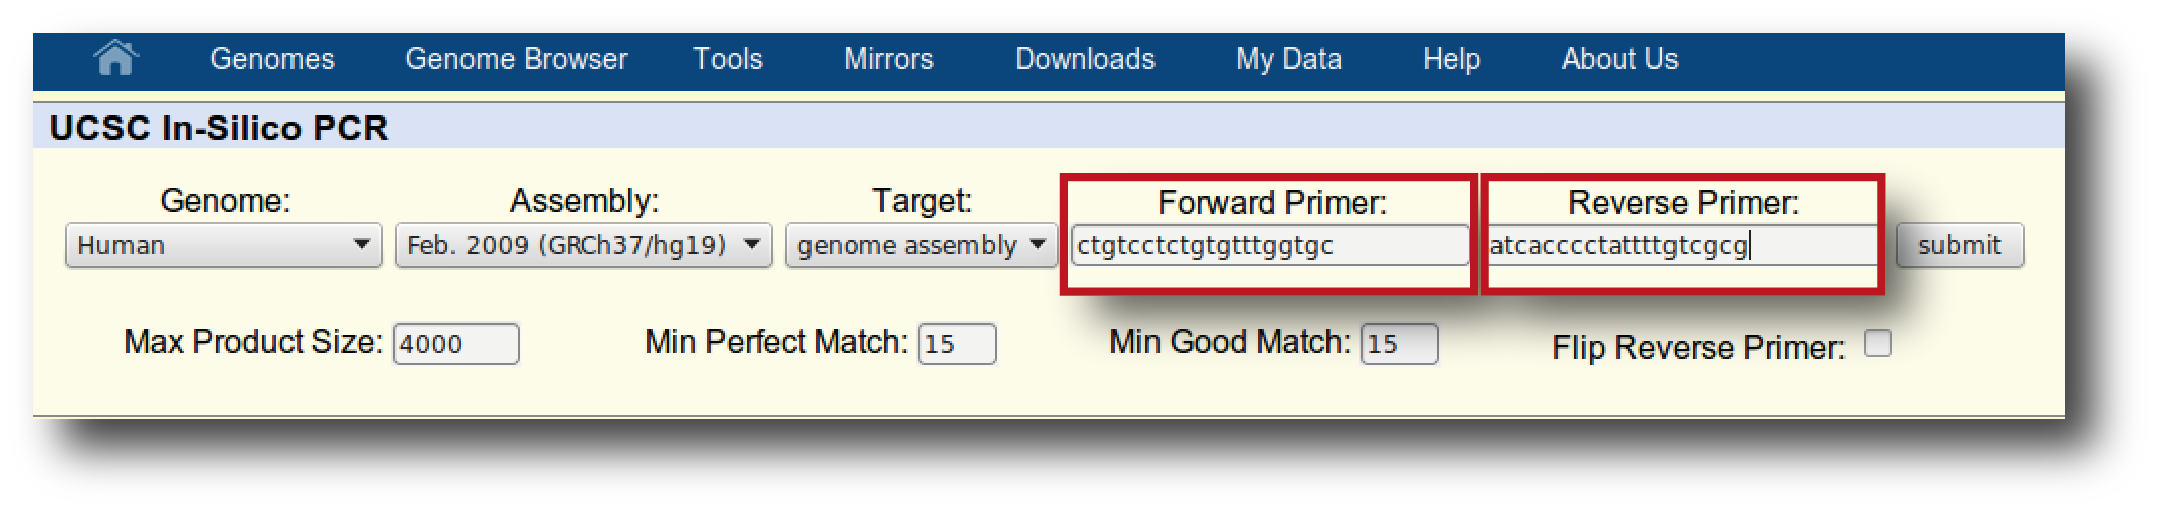 Αλυσιδωτή αντίδραση πολυμεράσης (PCR) 7.2.2 In silico PCR Γνωρίζοντας τις αλληλουχίες ενός ζεύγους εκκινητών μπορούμε να πραγματοποιήσουμε μια εικονική αντίδραση PCR στον υπολογιστή (in silico PCR).